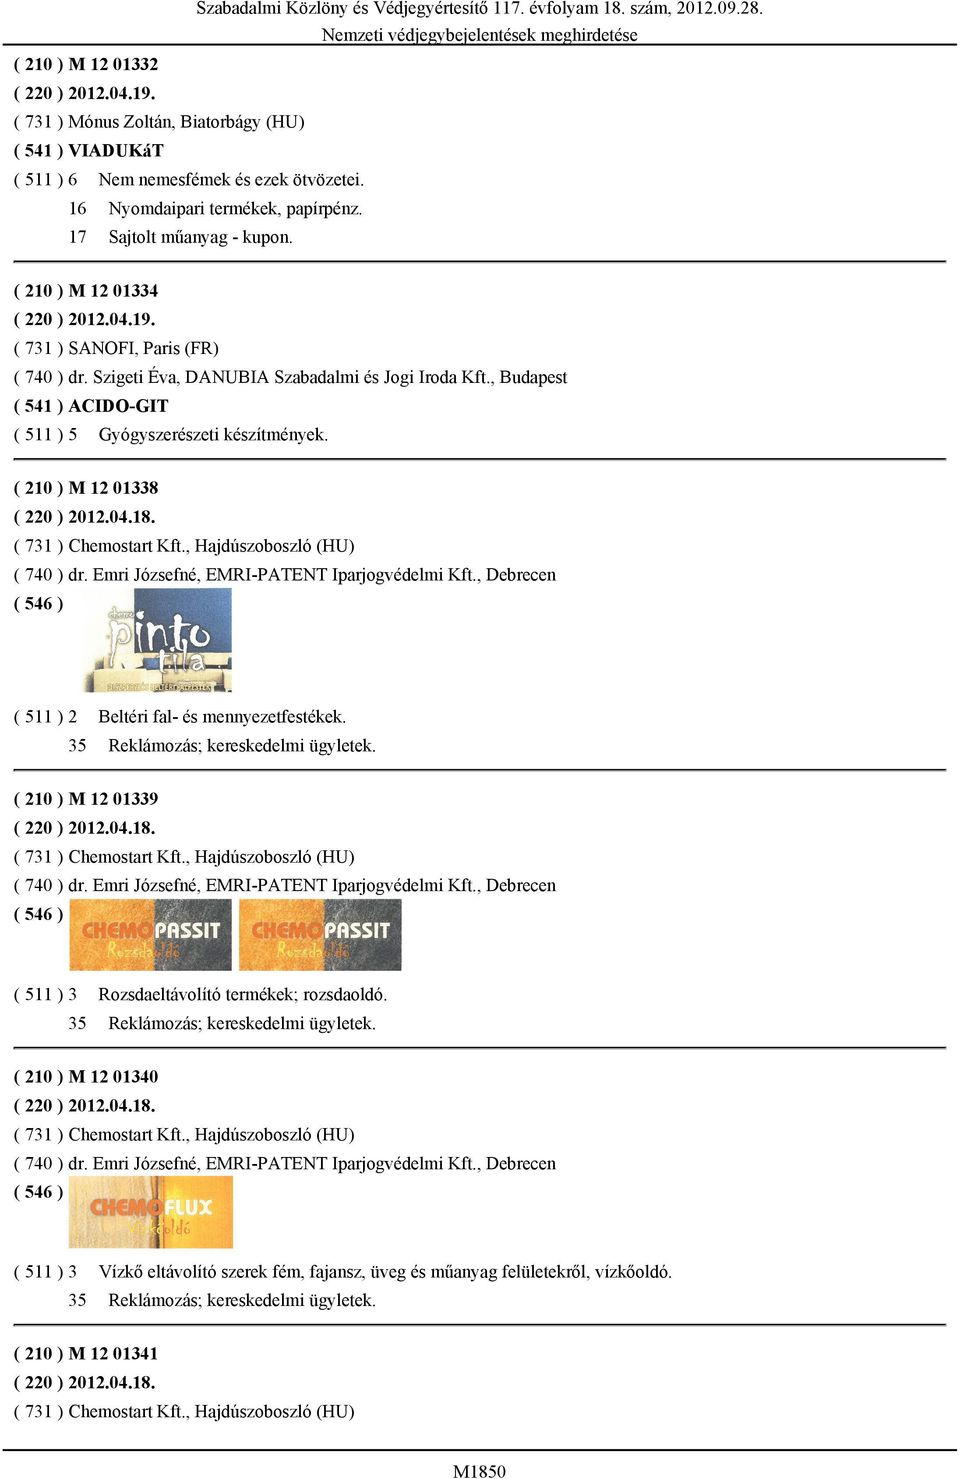 , Budapest ( 541 ) ACIDO-GIT ( 511 ) 5 Gyógyszerészeti készítmények. ( 210 ) M 12 01338 ( 220 ) 2012.04.18. ( 731 ) Chemostart Kft., Hajdúszoboszló (HU) ( 740 ) dr.